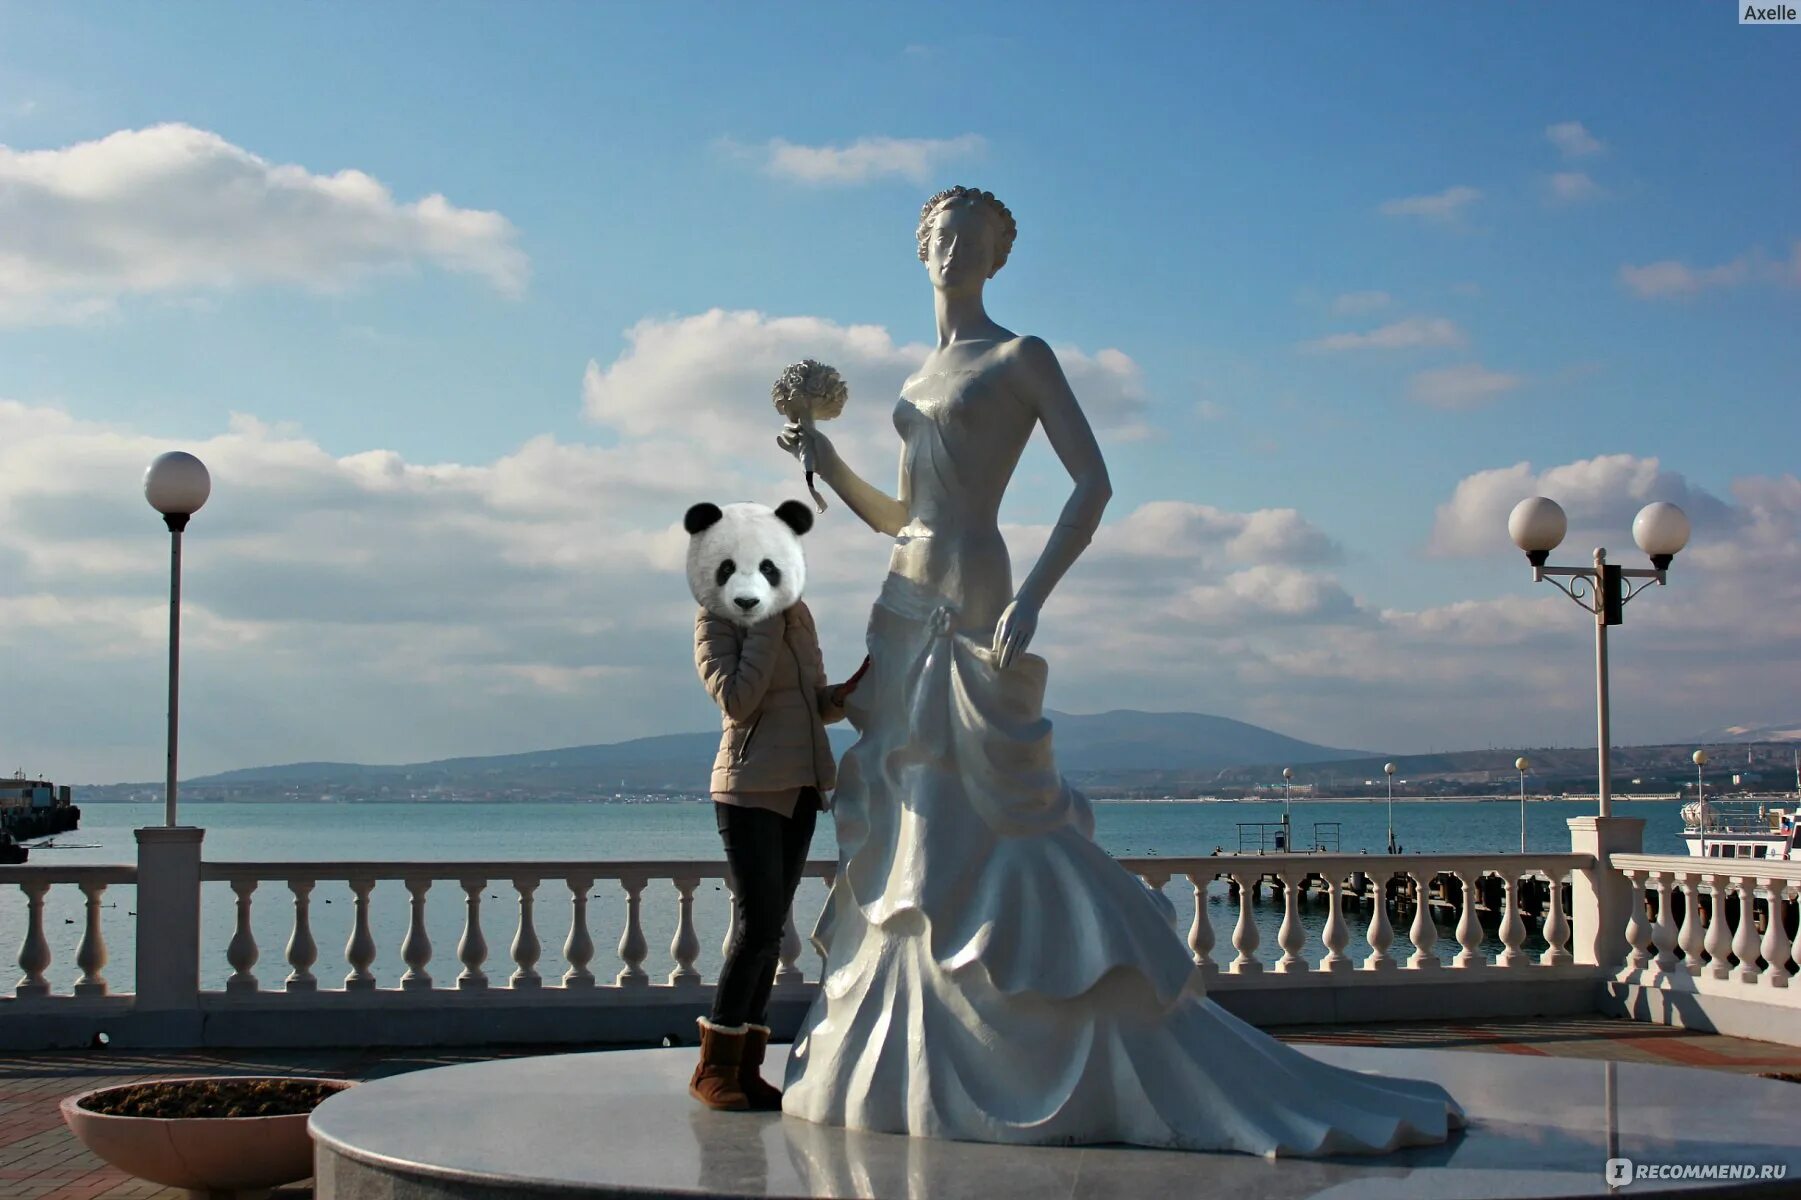 Сходить геленджике. Белая невесточка Геленджик. Геленджик невеста на набережной. Статуя невесты в Геленджике. Белая невеста Геленджик.